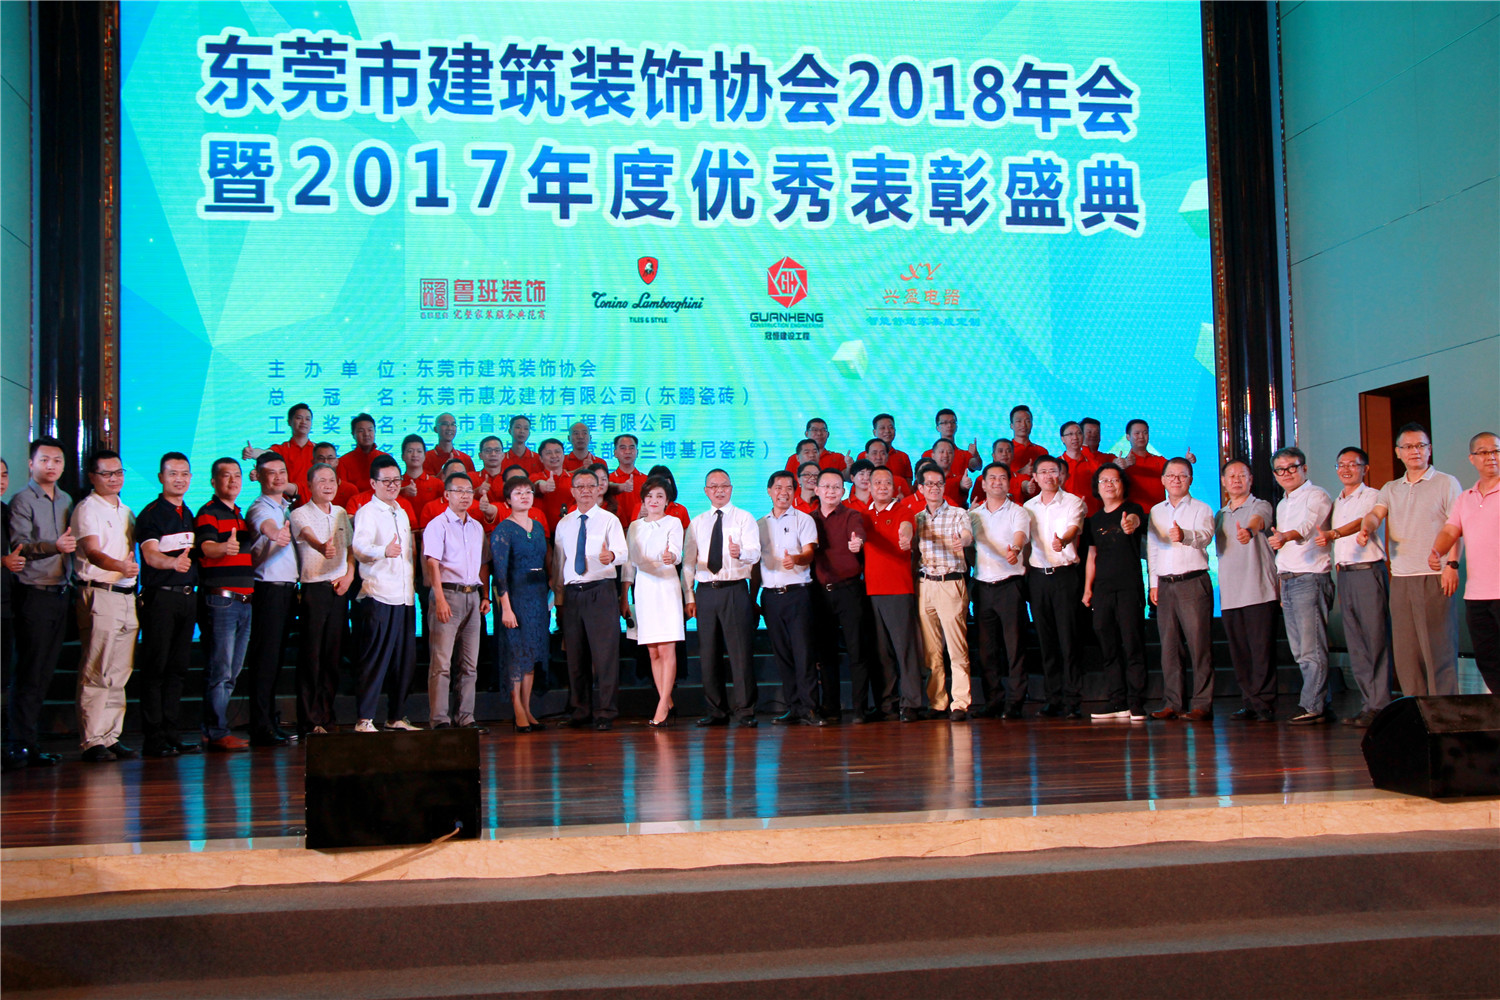 东莞市建筑装饰协会2018年会暨2017年度优秀表彰盛典